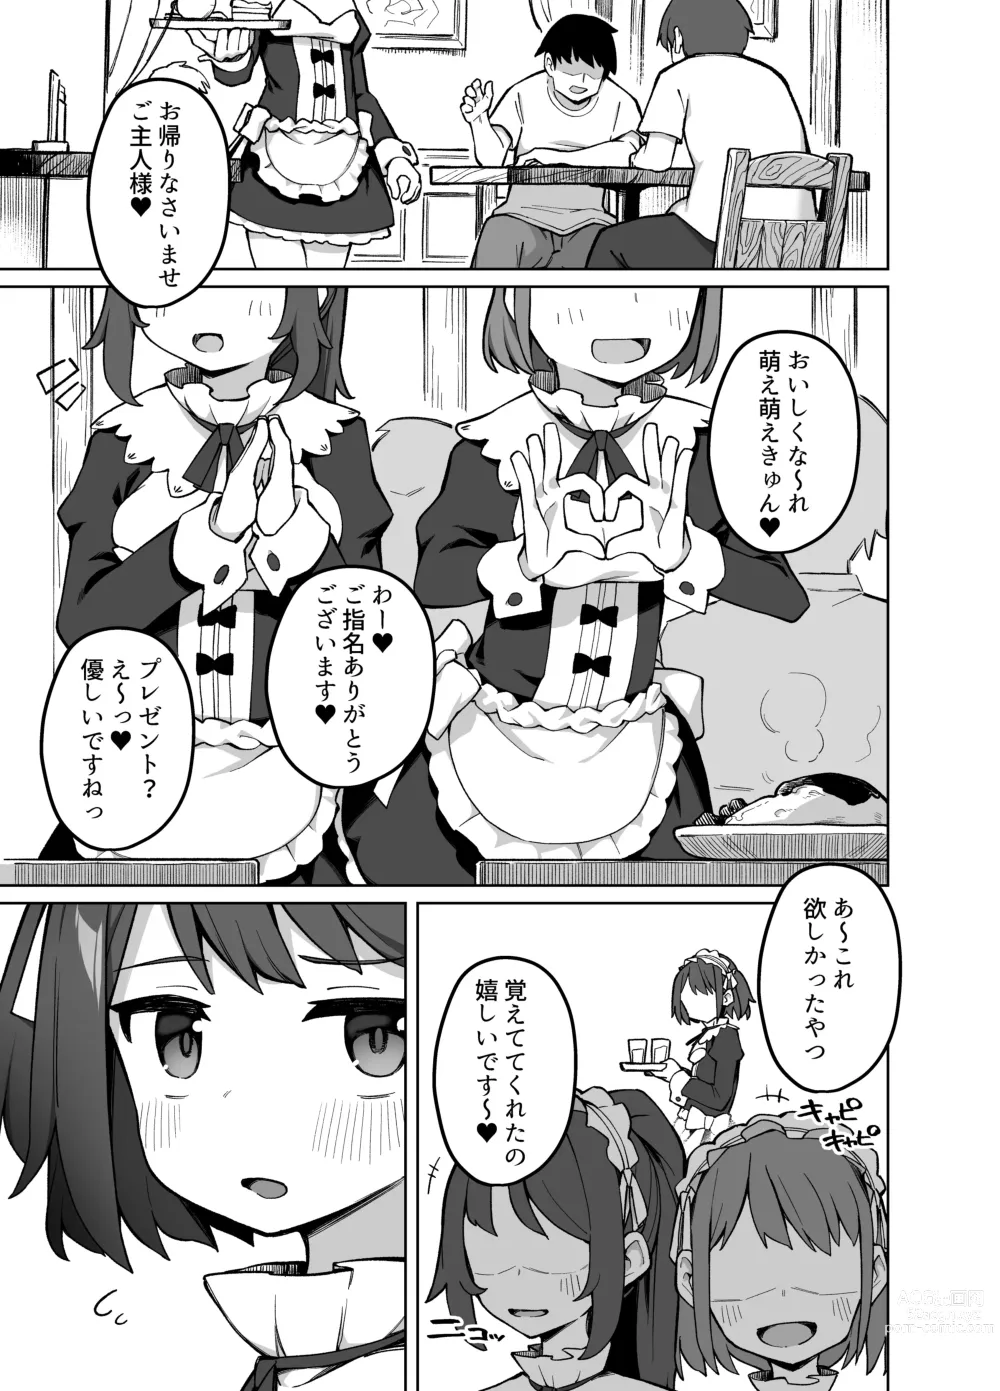 Page 2 of doujinshi Maid Kissa no Ura Settai Service